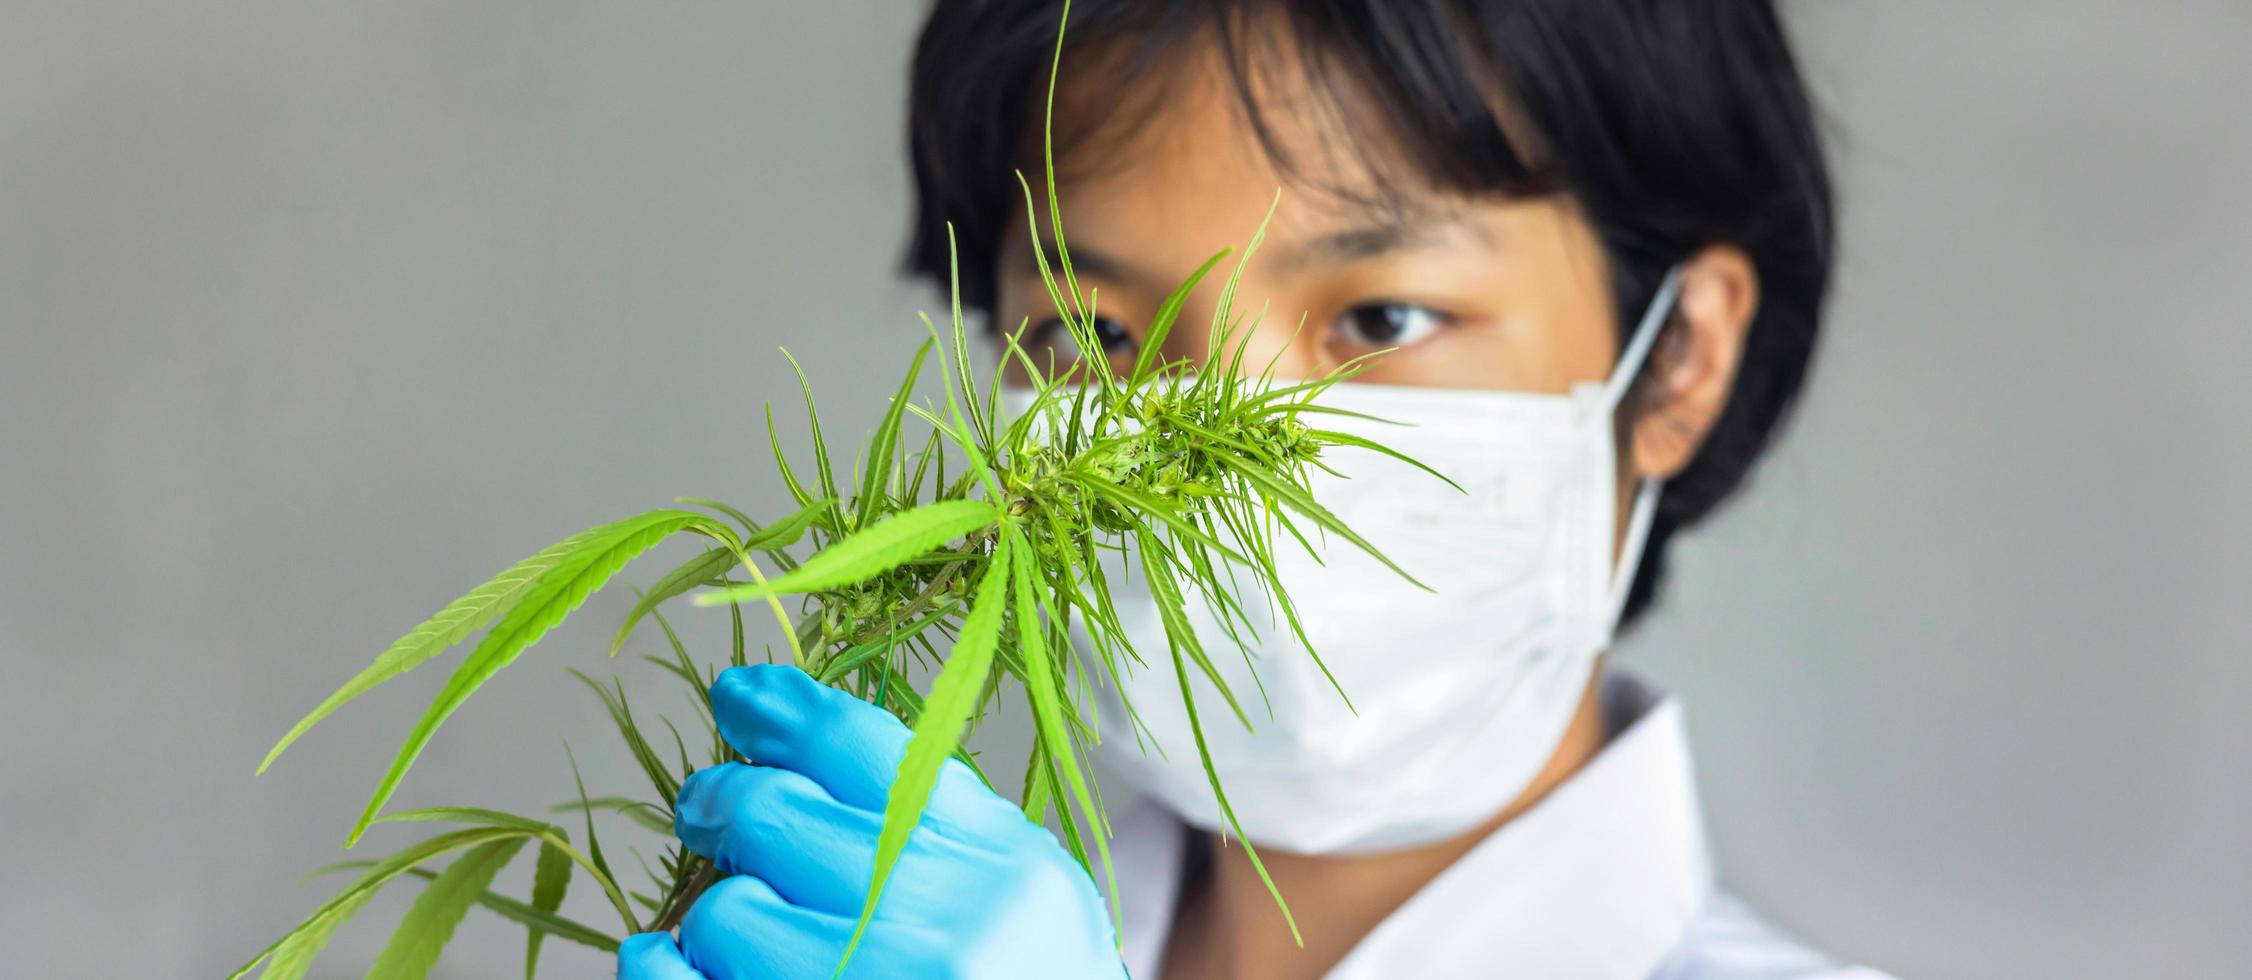 portrait d'un scientifique vérifiant les plantes de cannabis. recherche sur la marijuana, huile de cbd, concept de phytothérapie alternative photo